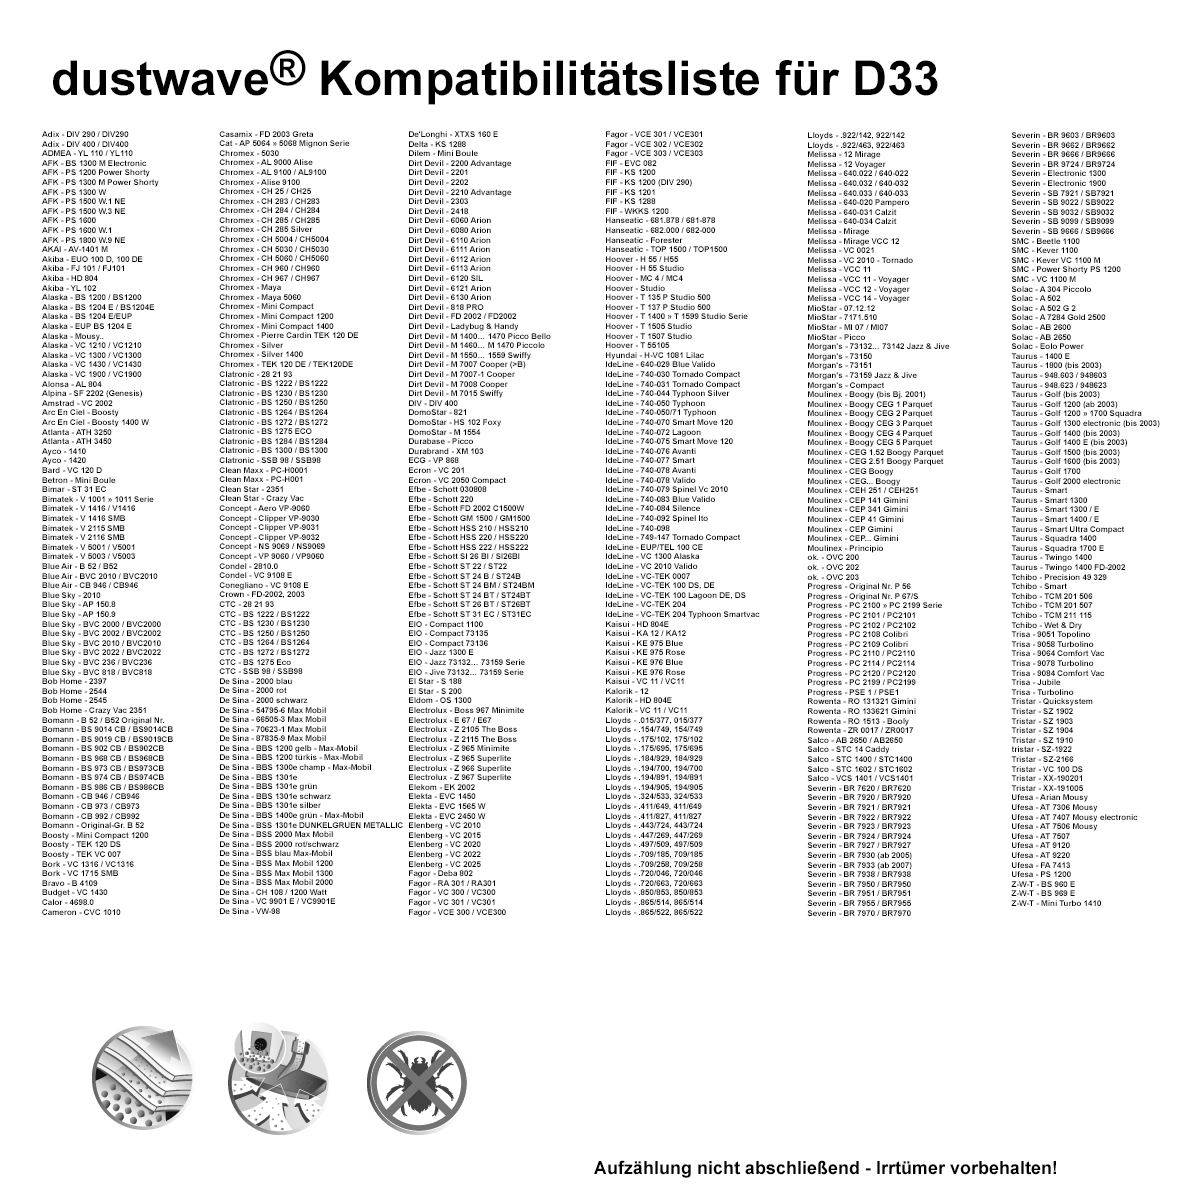 Dustwave® 20 Staubsaugerbeutel für Akiba HD 804 - hocheffizient mit Hygieneverschluss - Made in Germany